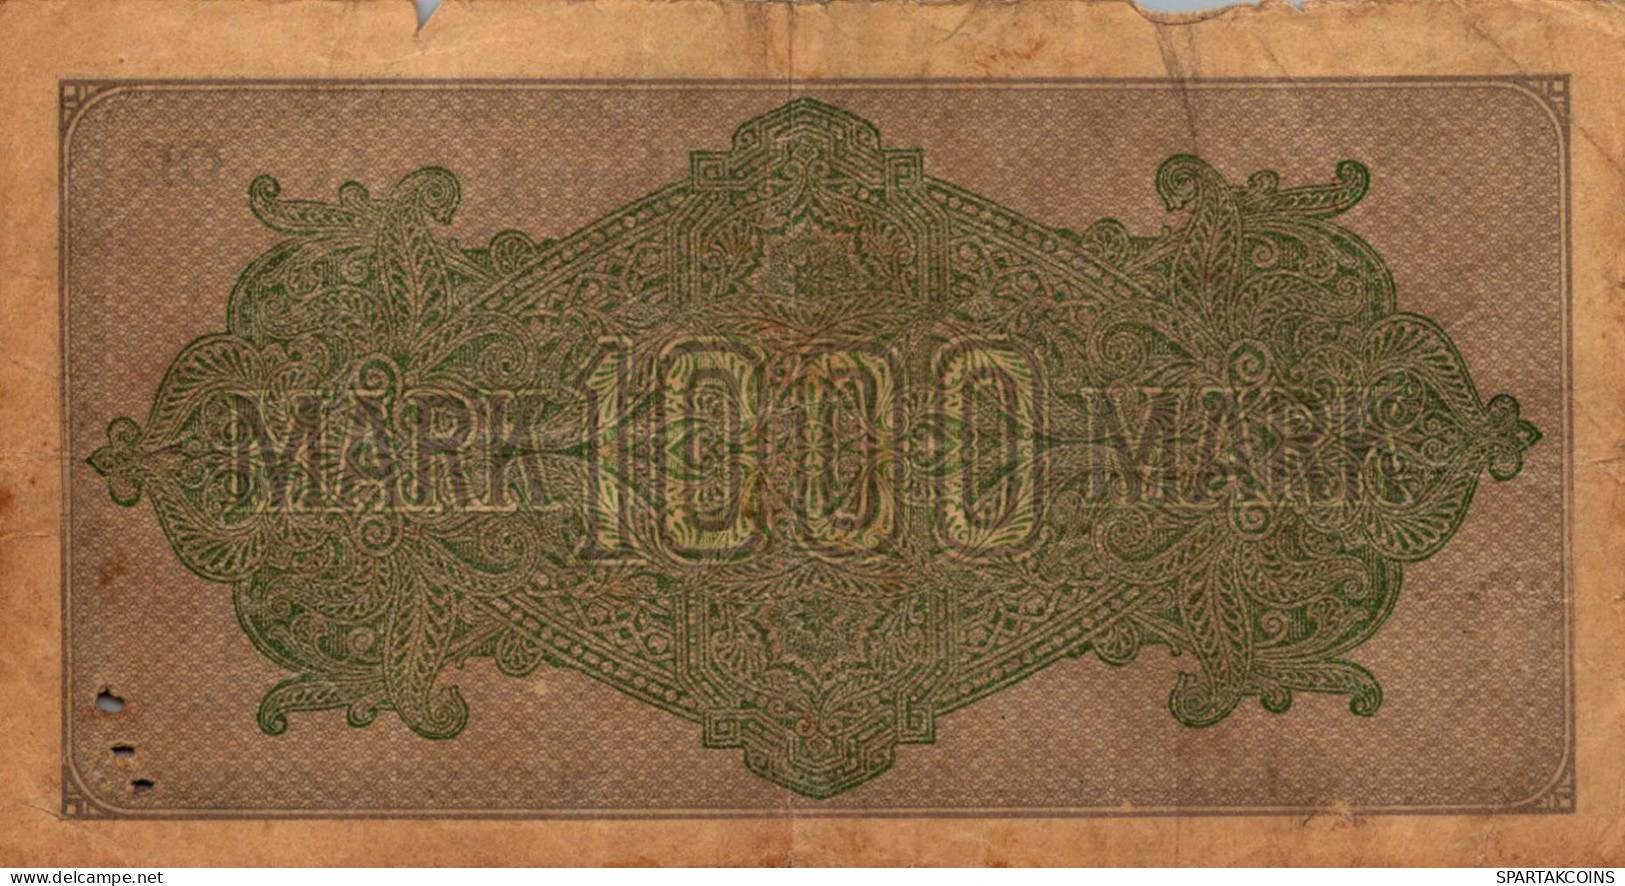 1000 MARK 1922 Stadt BERLIN DEUTSCHLAND Papiergeld Banknote #PK821 - [11] Emisiones Locales